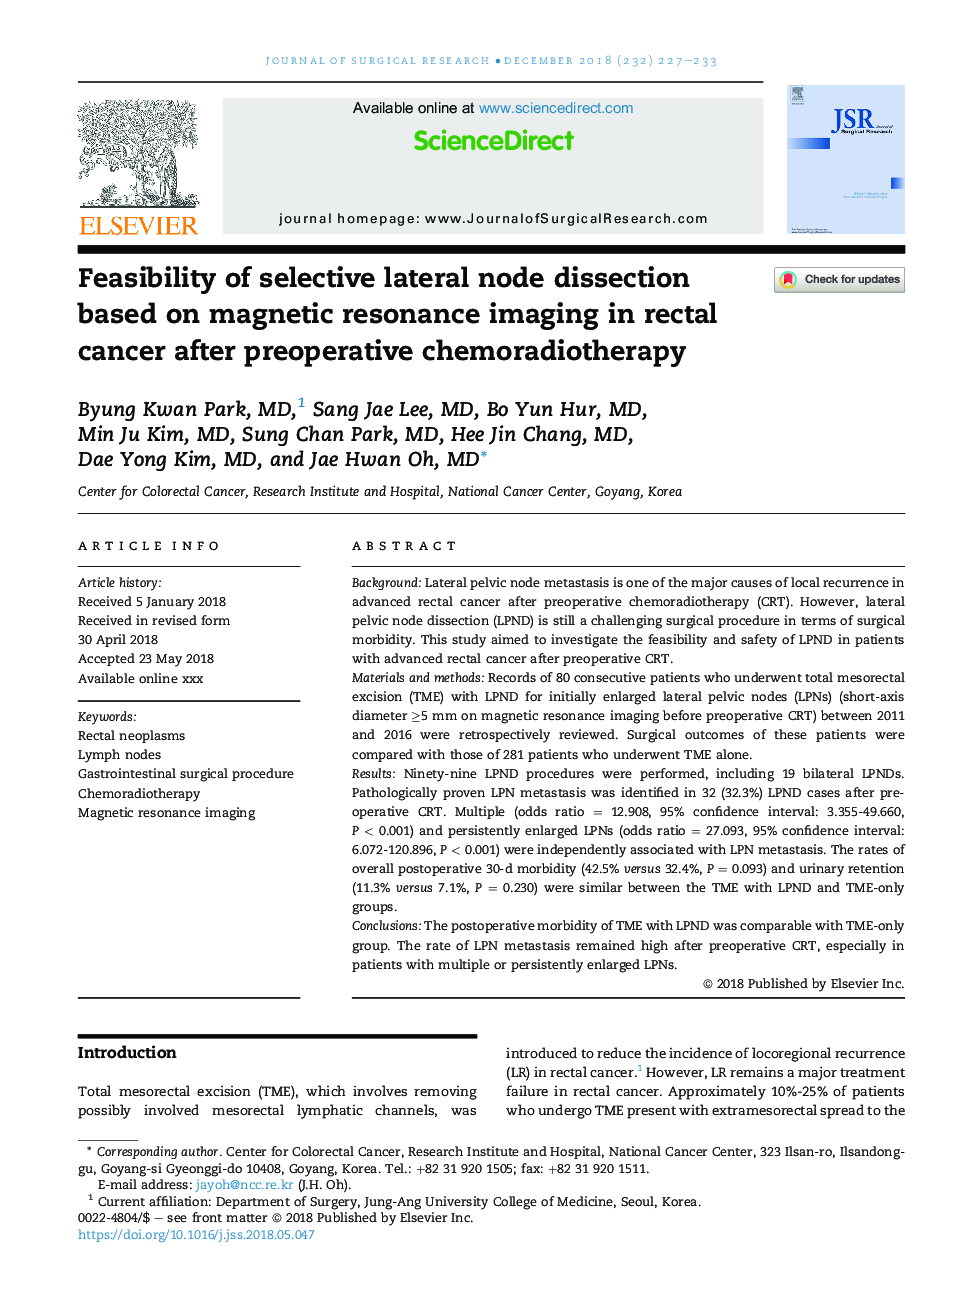 امکان تشخیص گره انتخابی جانبی بر اساس تصویربرداری رزونانس مغناطیسی در سرطان رکتوم بعد از شیمی درمانی شیمی درمانی قبل از عمل 